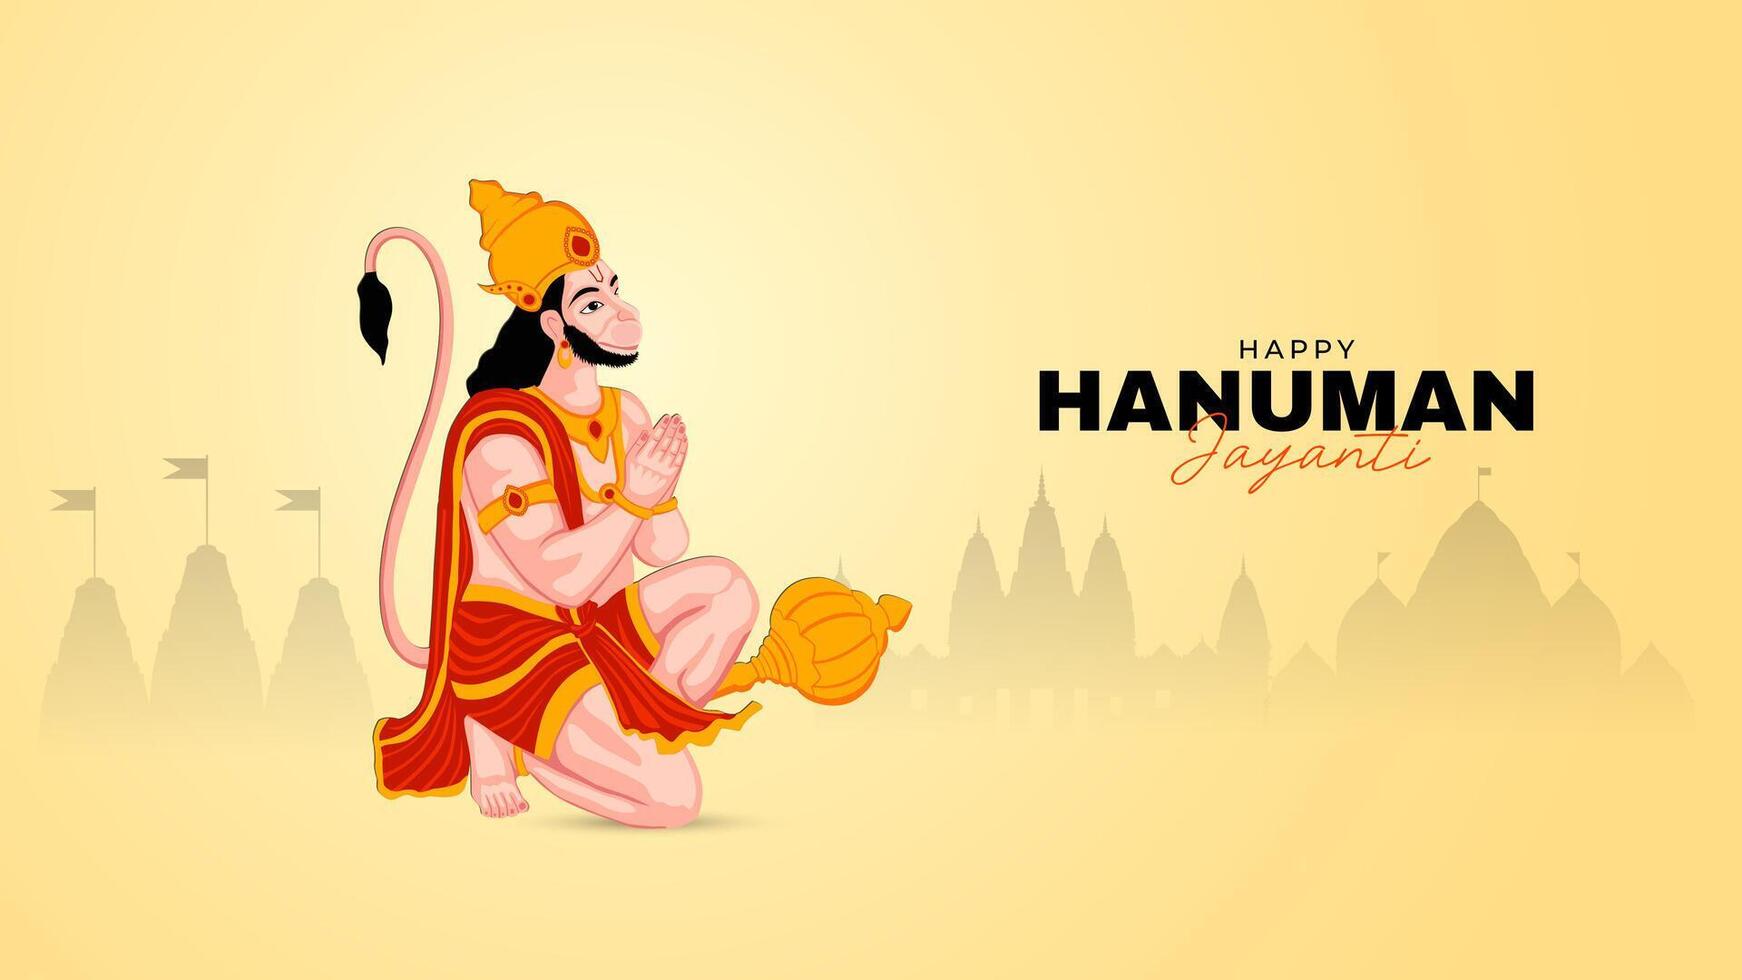 contento Hanuman Jayanti social medios de comunicación enviar el festival de India vector